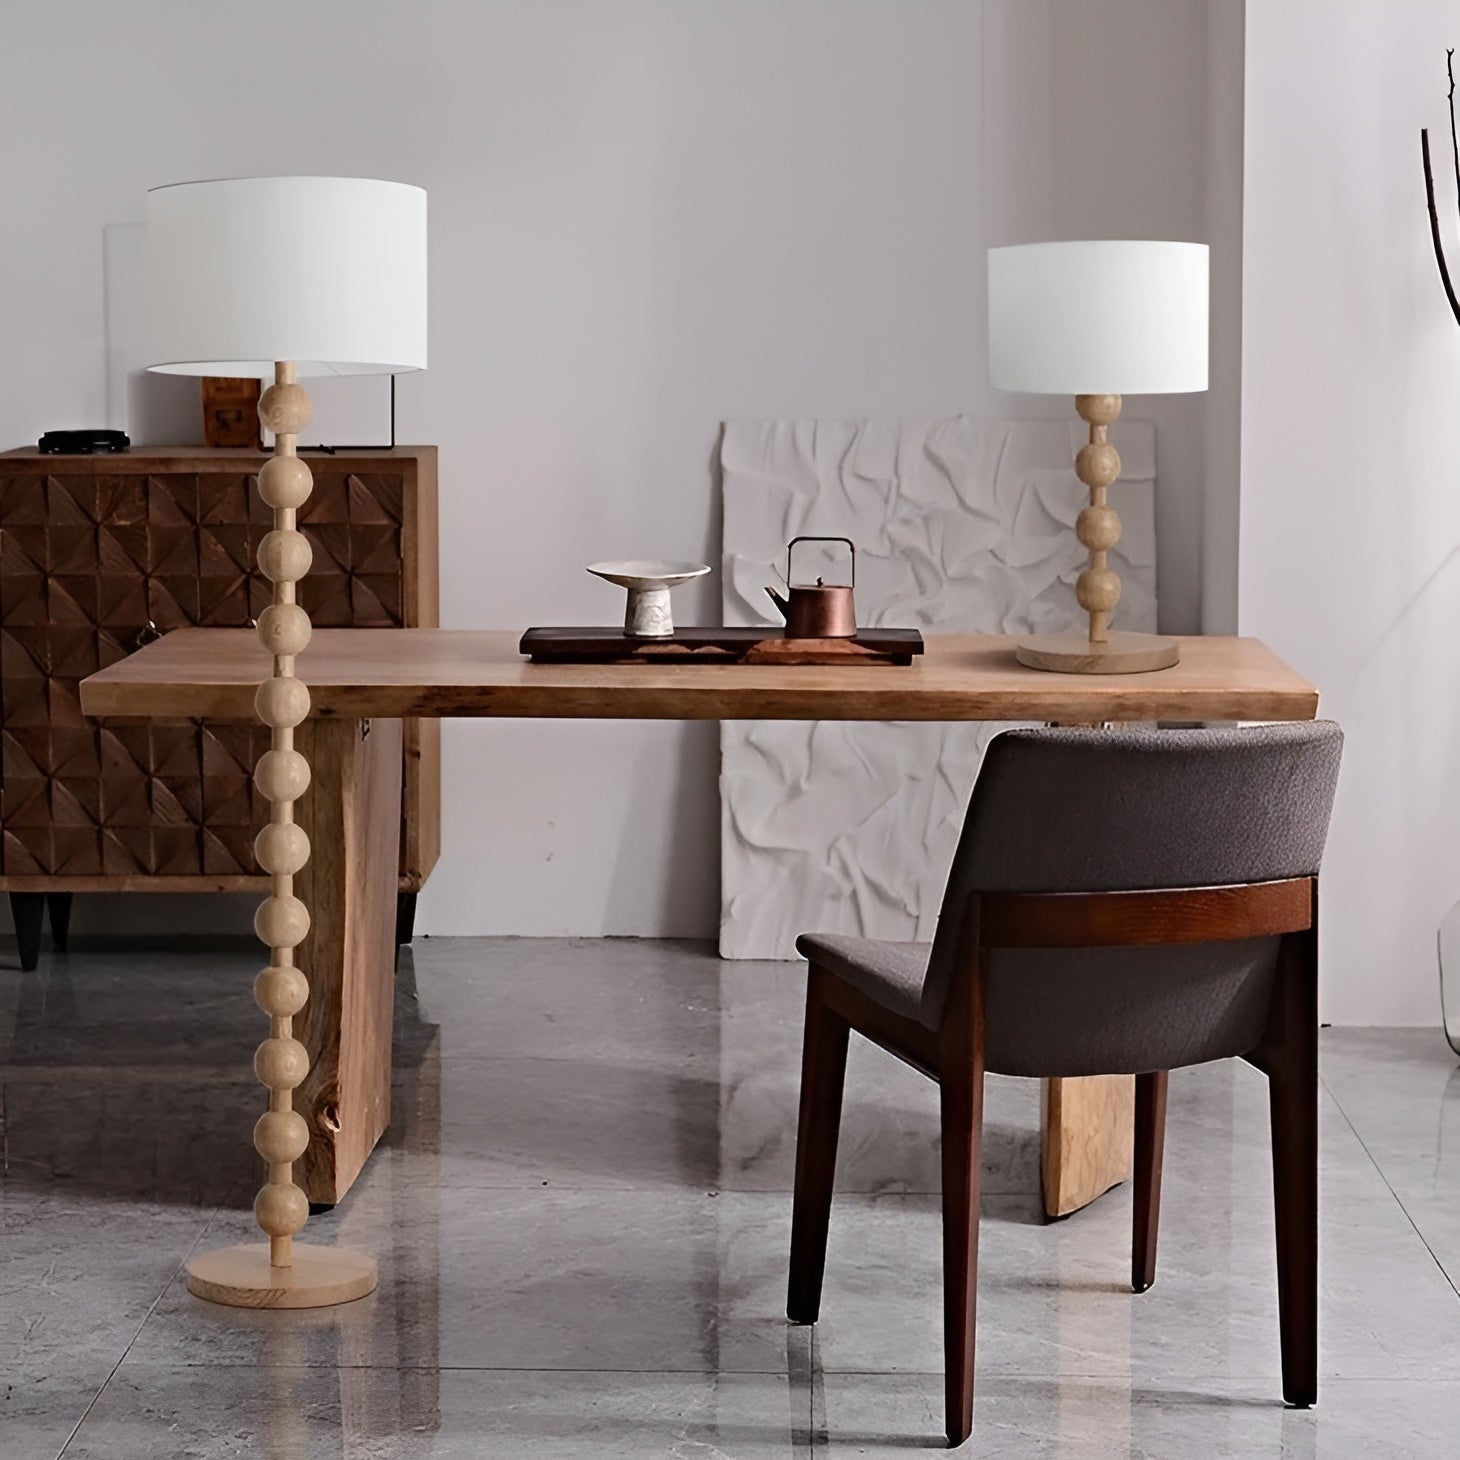 Wood Linen Table & Floor Lamp For Modern Minimalism Quiet Luxury Interior - Minimalist Floor Lamps